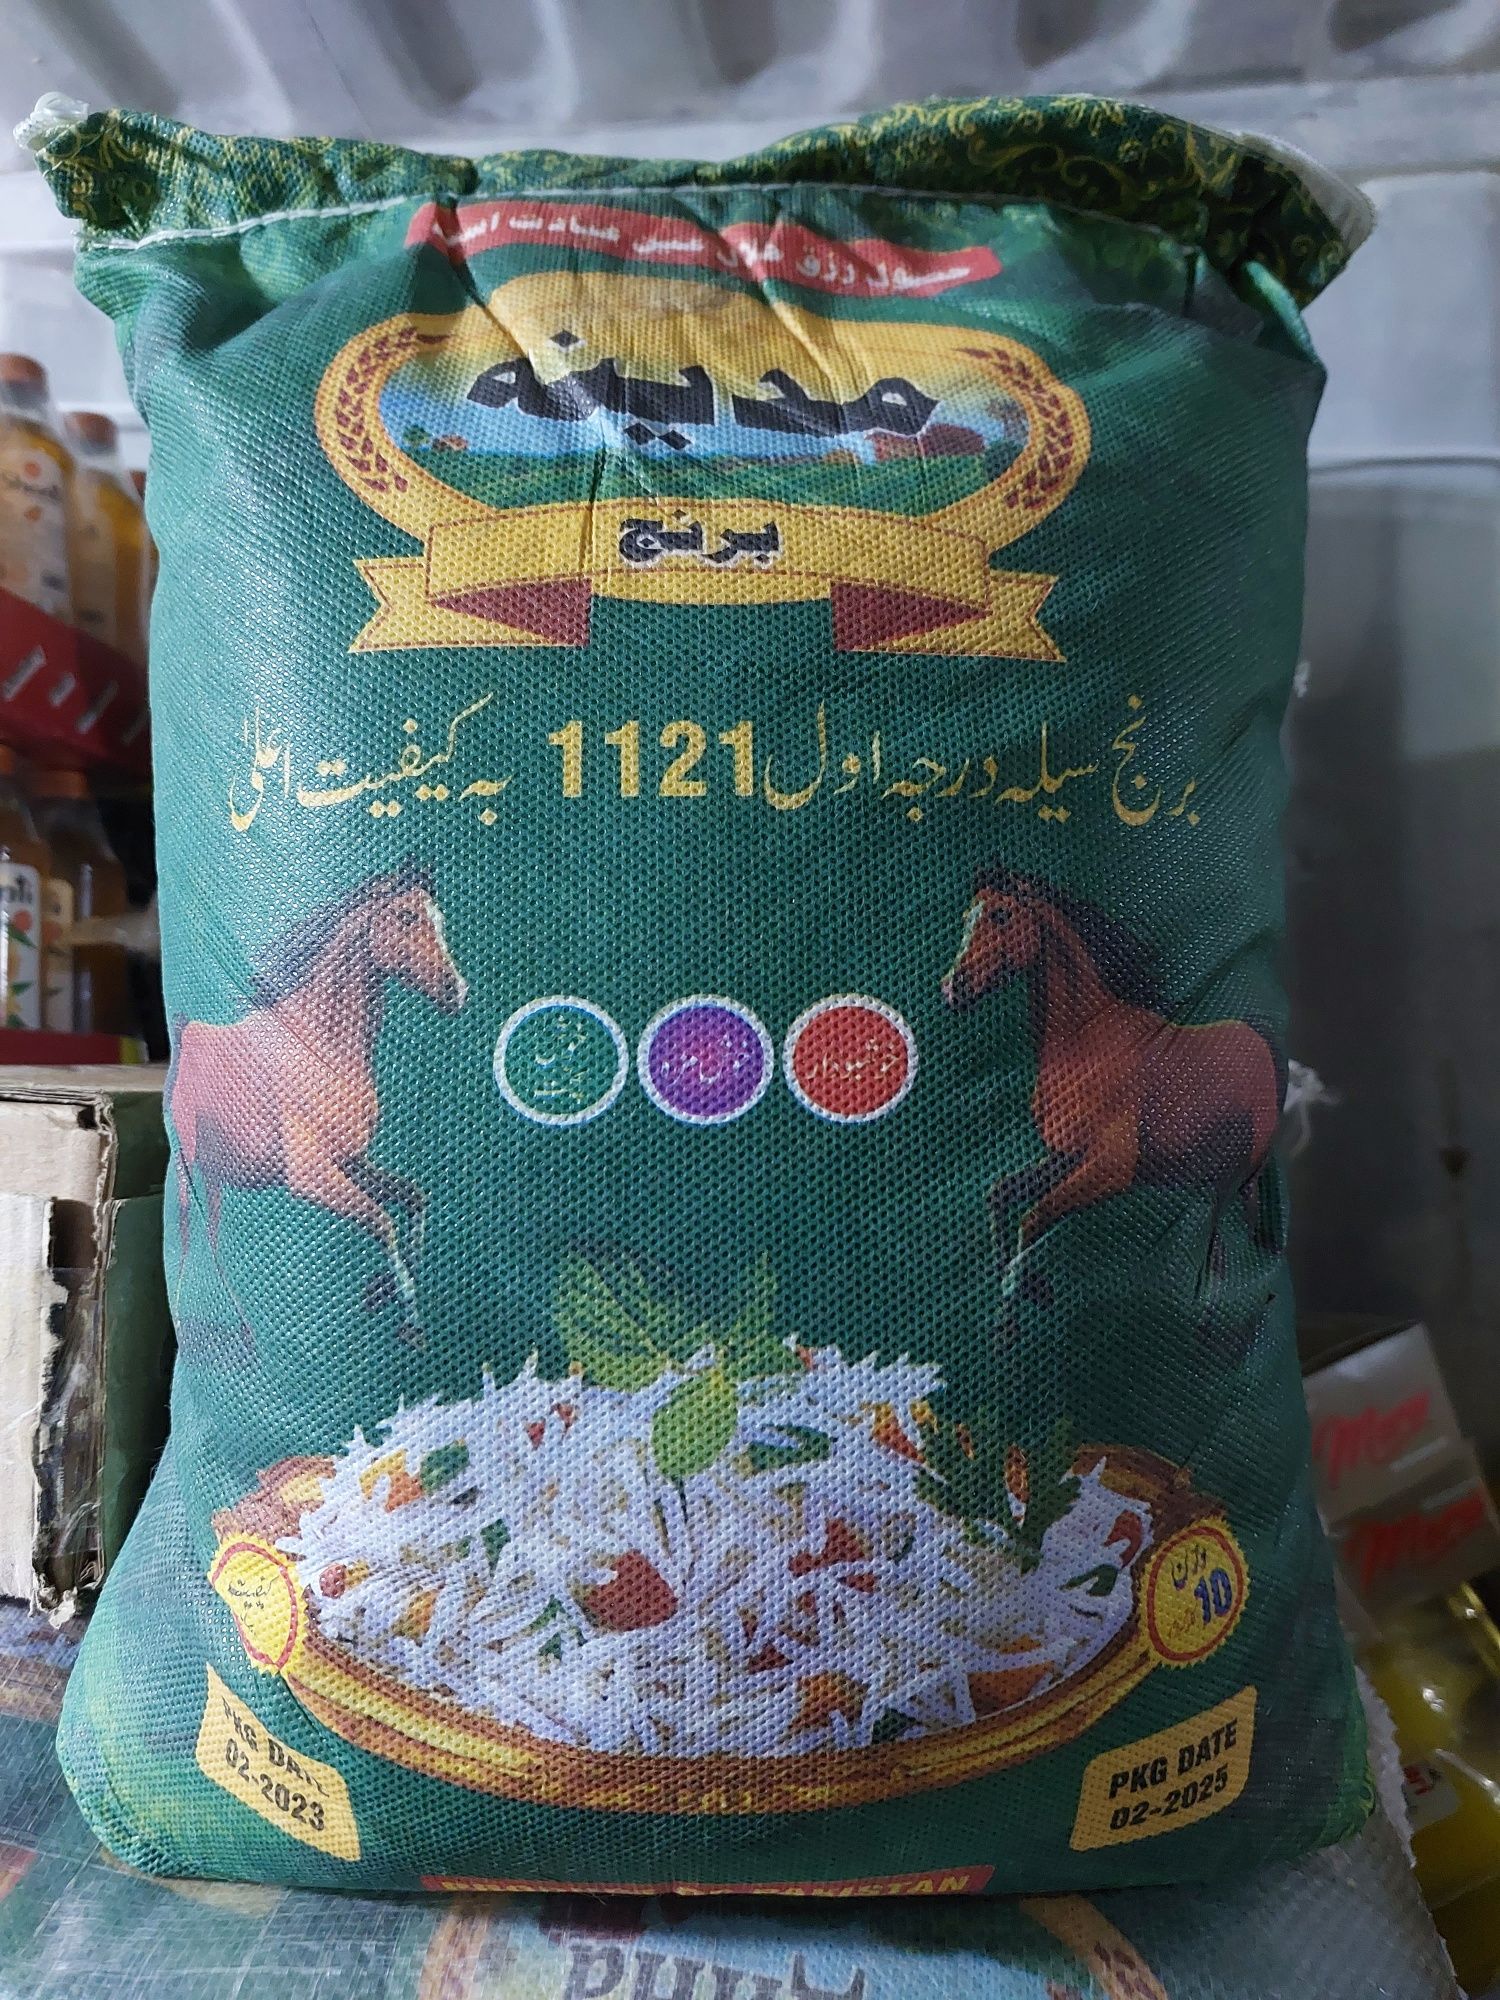 Рис пакистанский